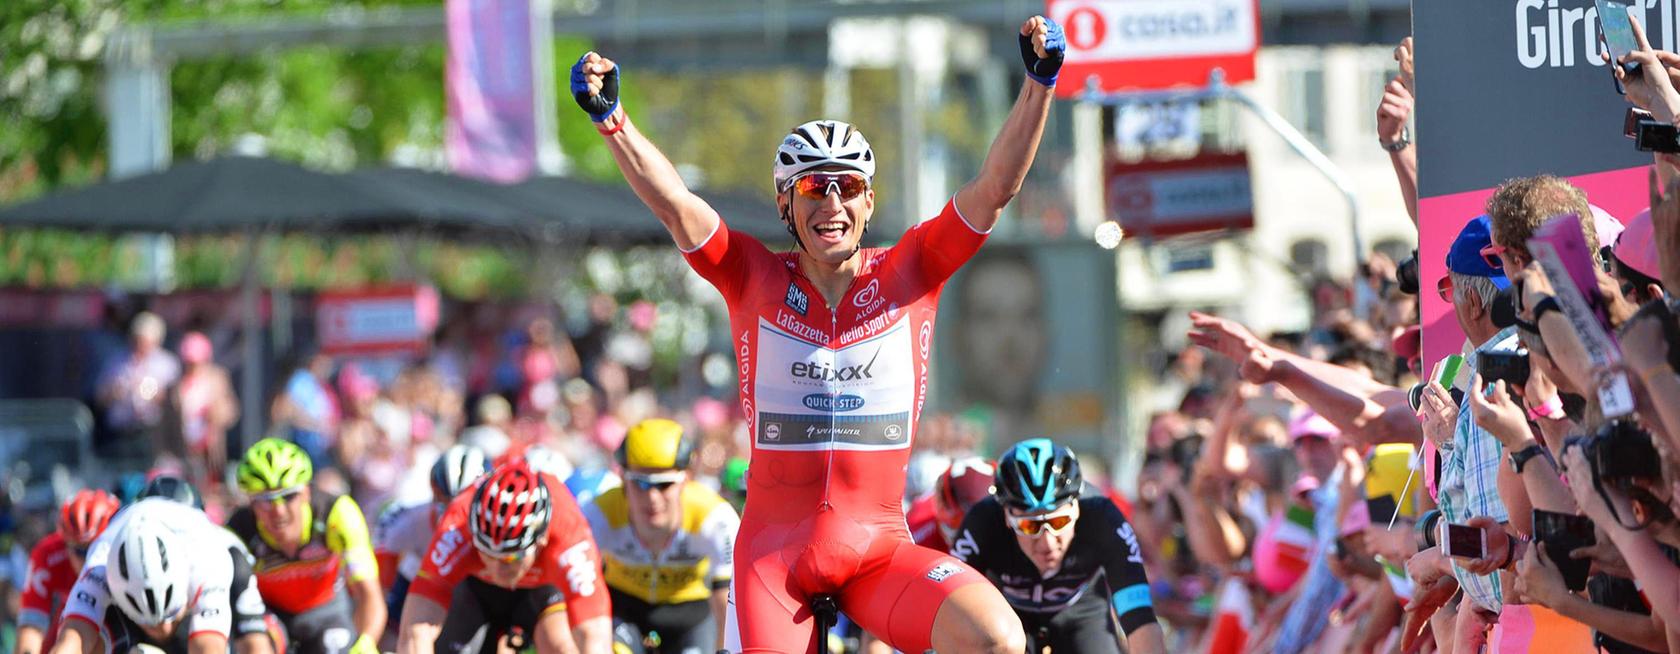 Im vergangenen Jahr hat Andre Greipel bei der Tour de France viermal einen Etappensieg gefeiert, dieses Mal will er im ersten Rennen das gelbe Trikot holen.